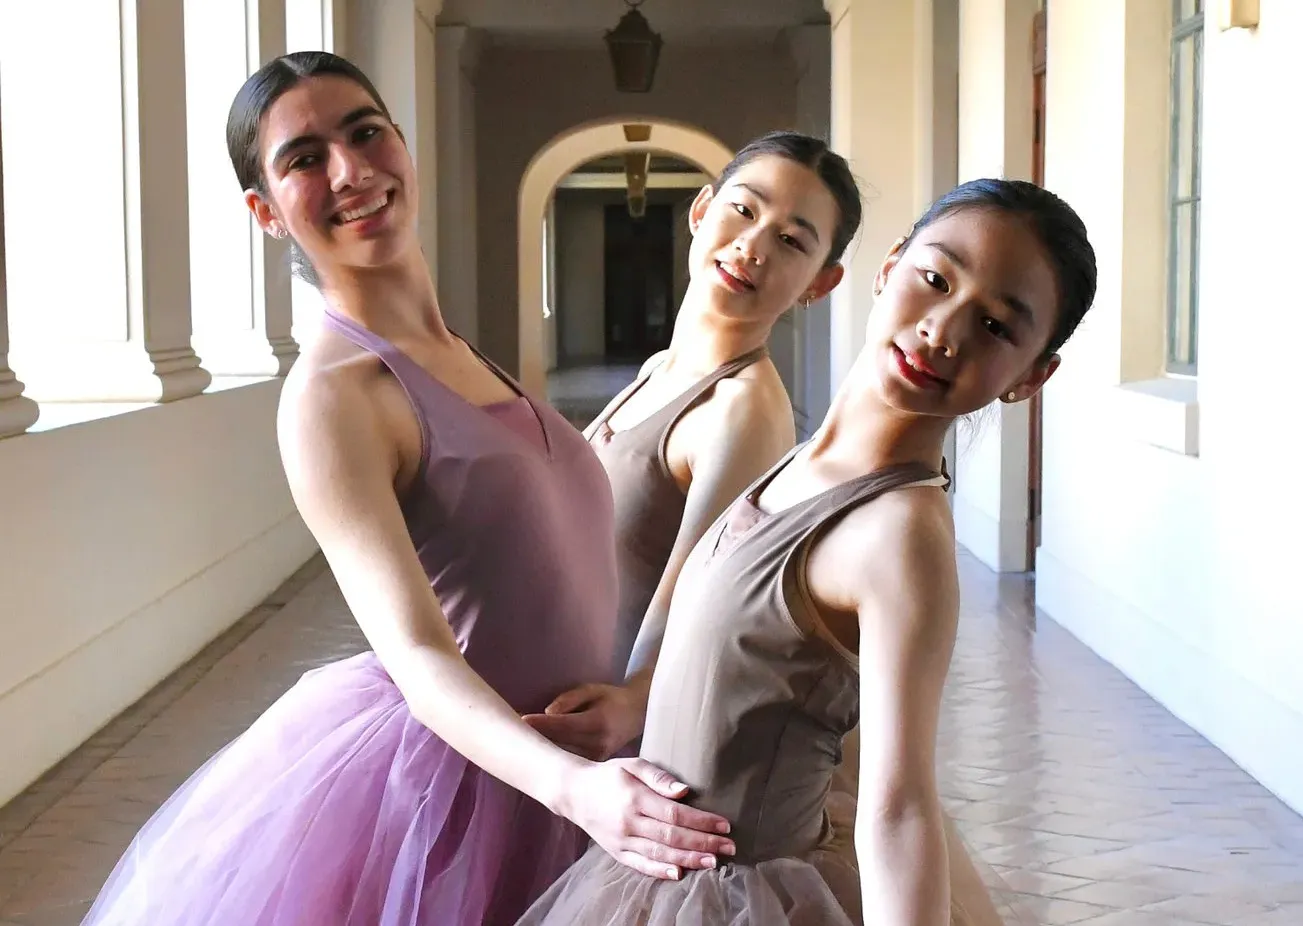 Three ballet dancers